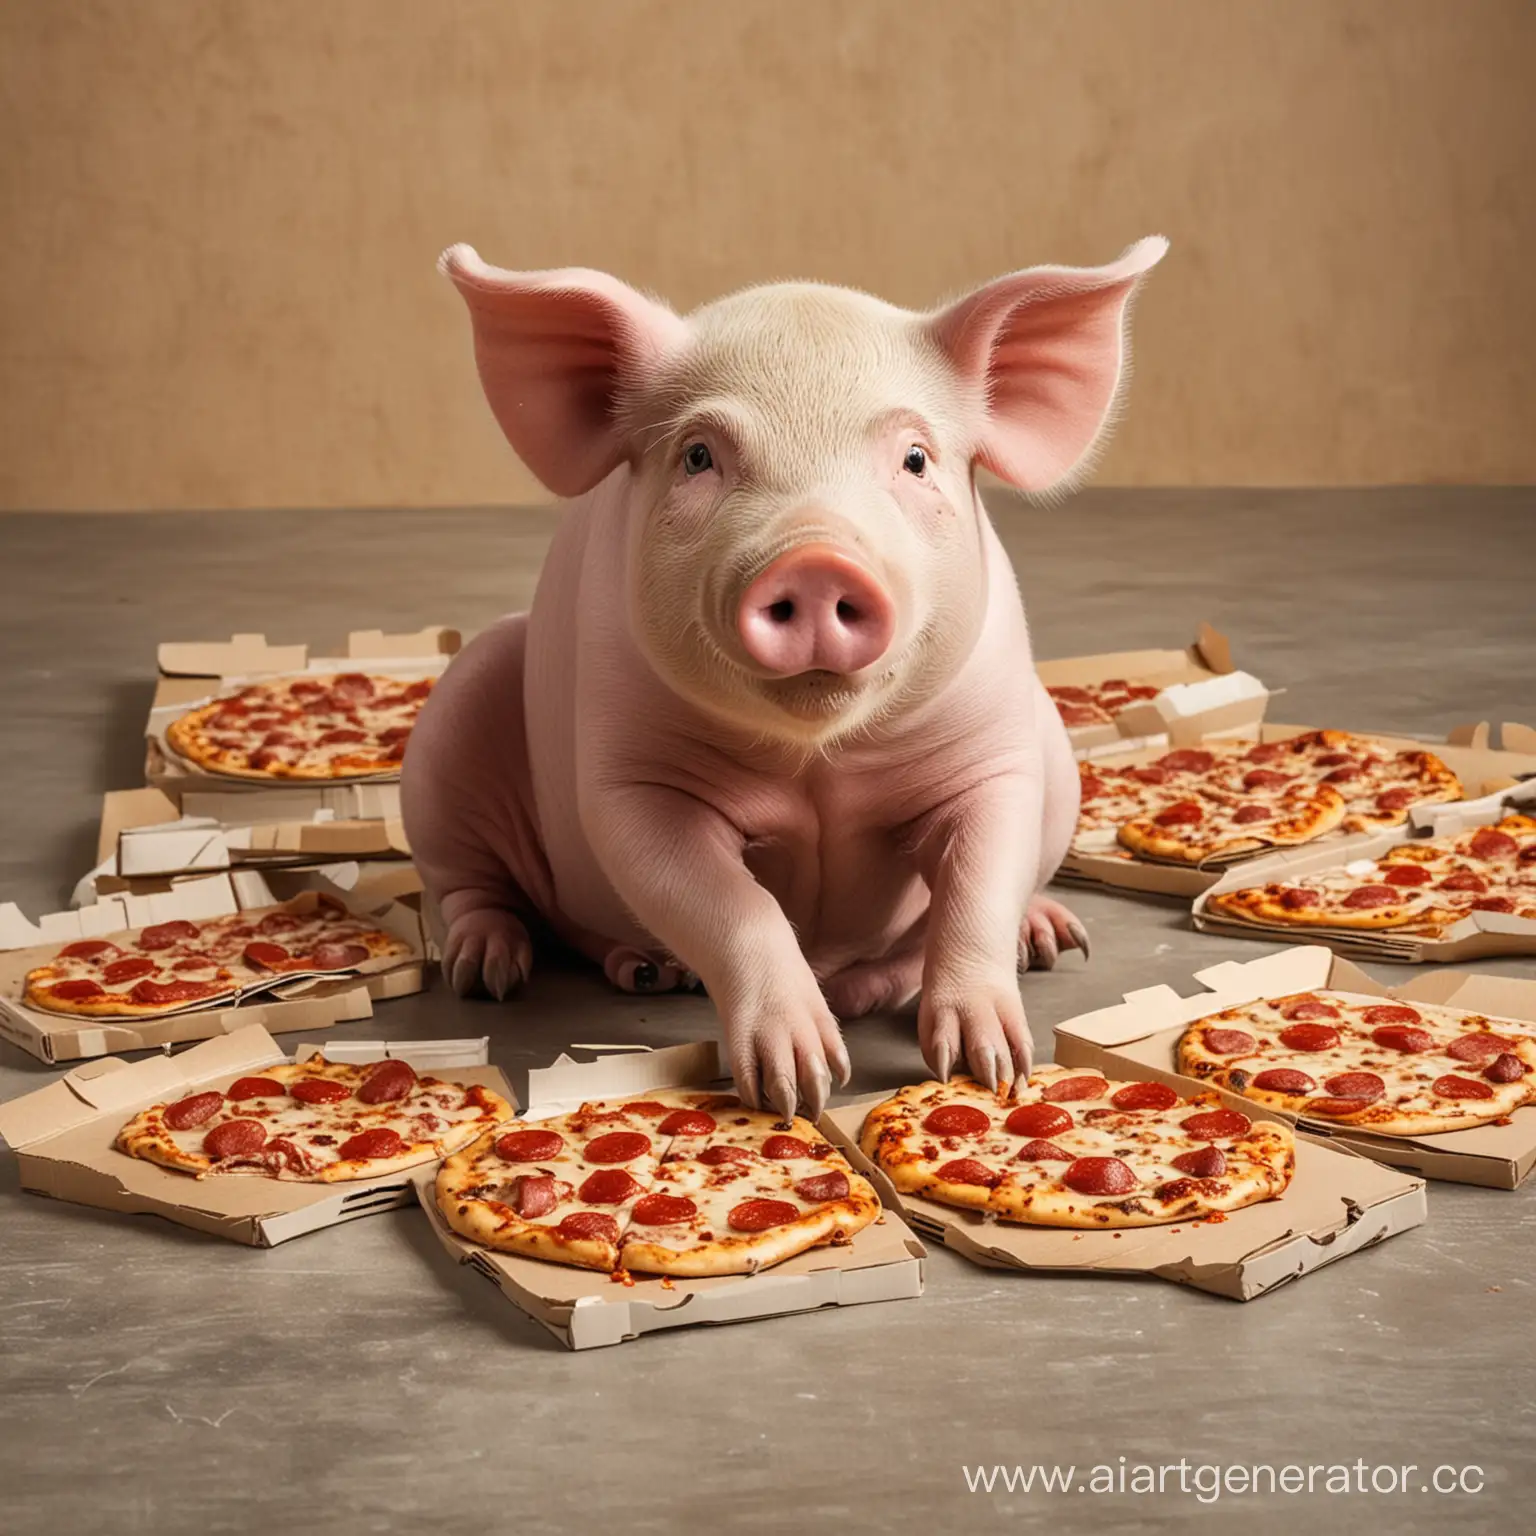 Свинья сидит на полу в руках держит кусок пиццы, 5 коробок из под пиццы лежат вокруг свиньи